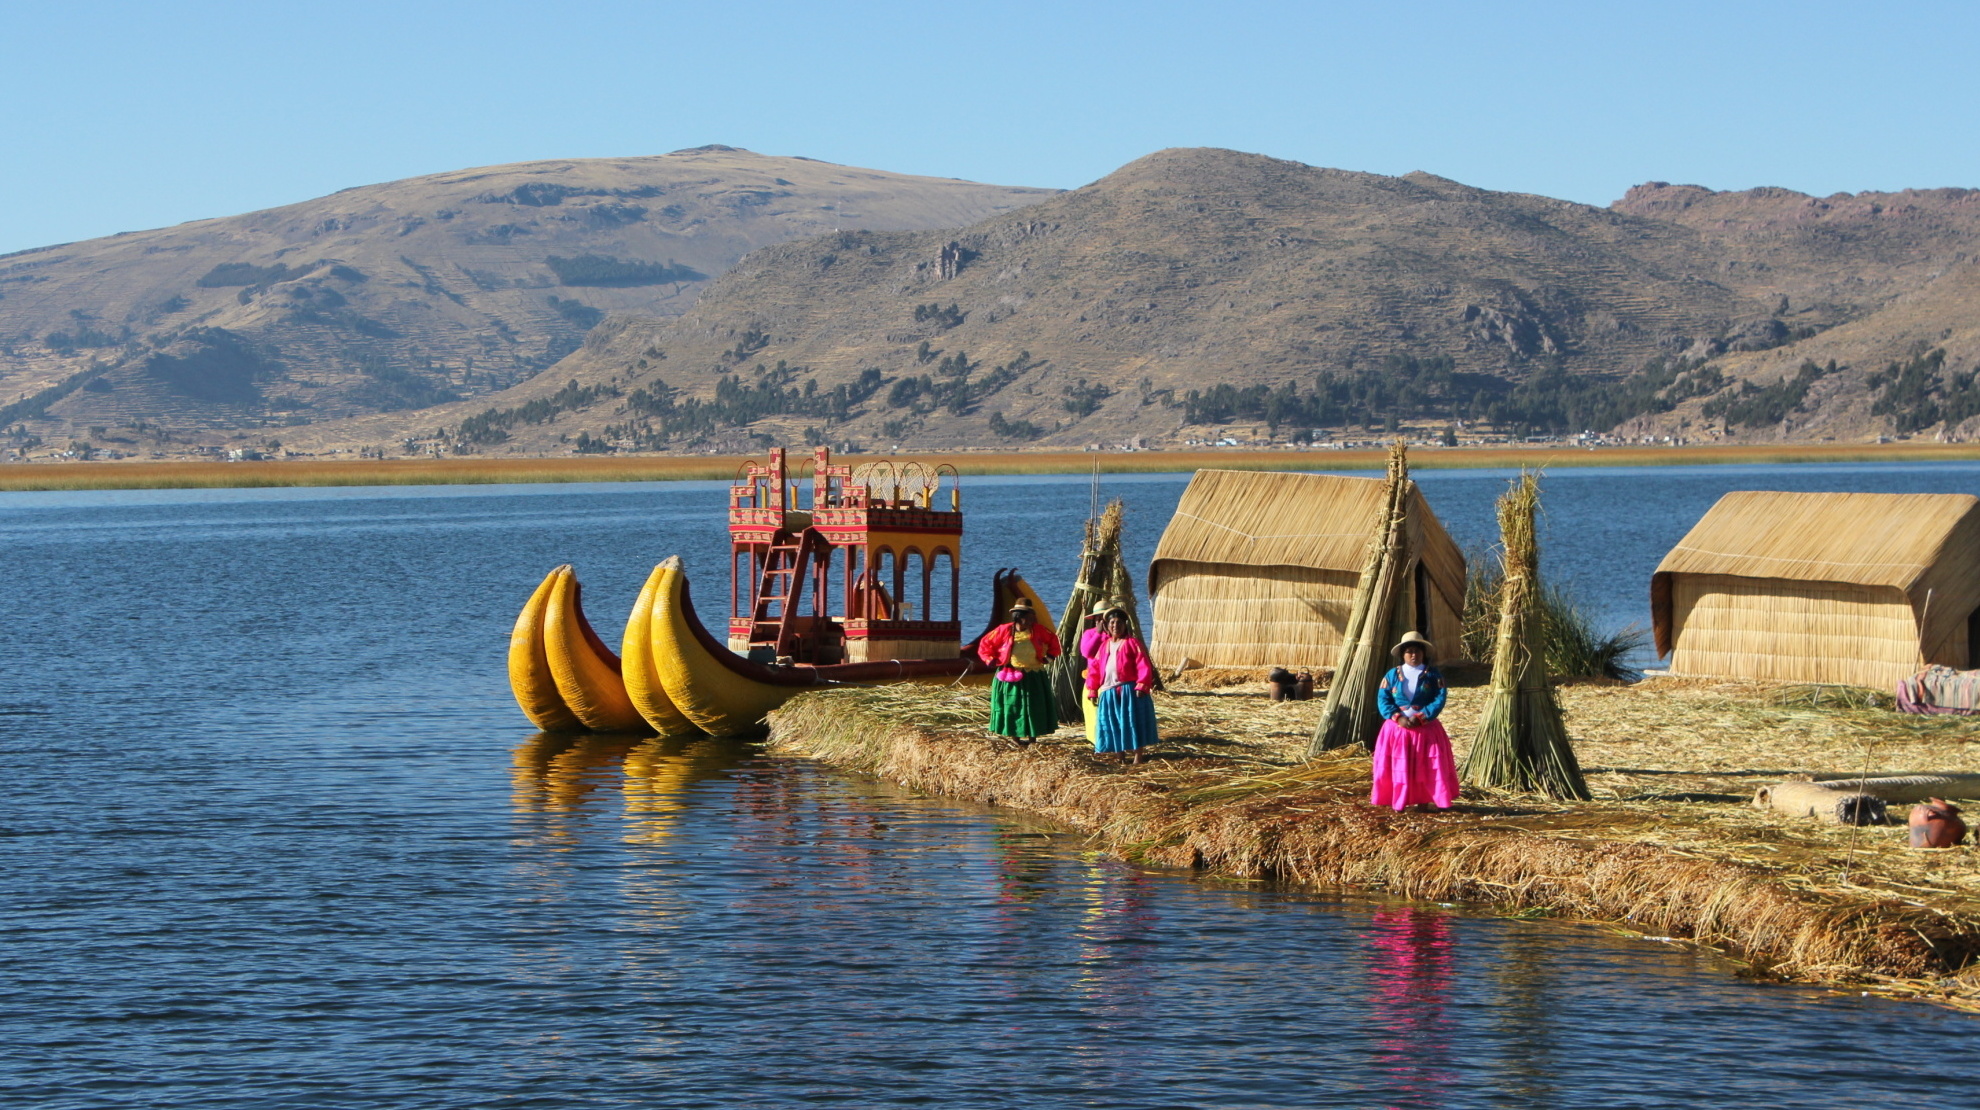 El lago Titicaca se encuentra ubicado en la Meseta del Collao, en la cordillera de los Andes.